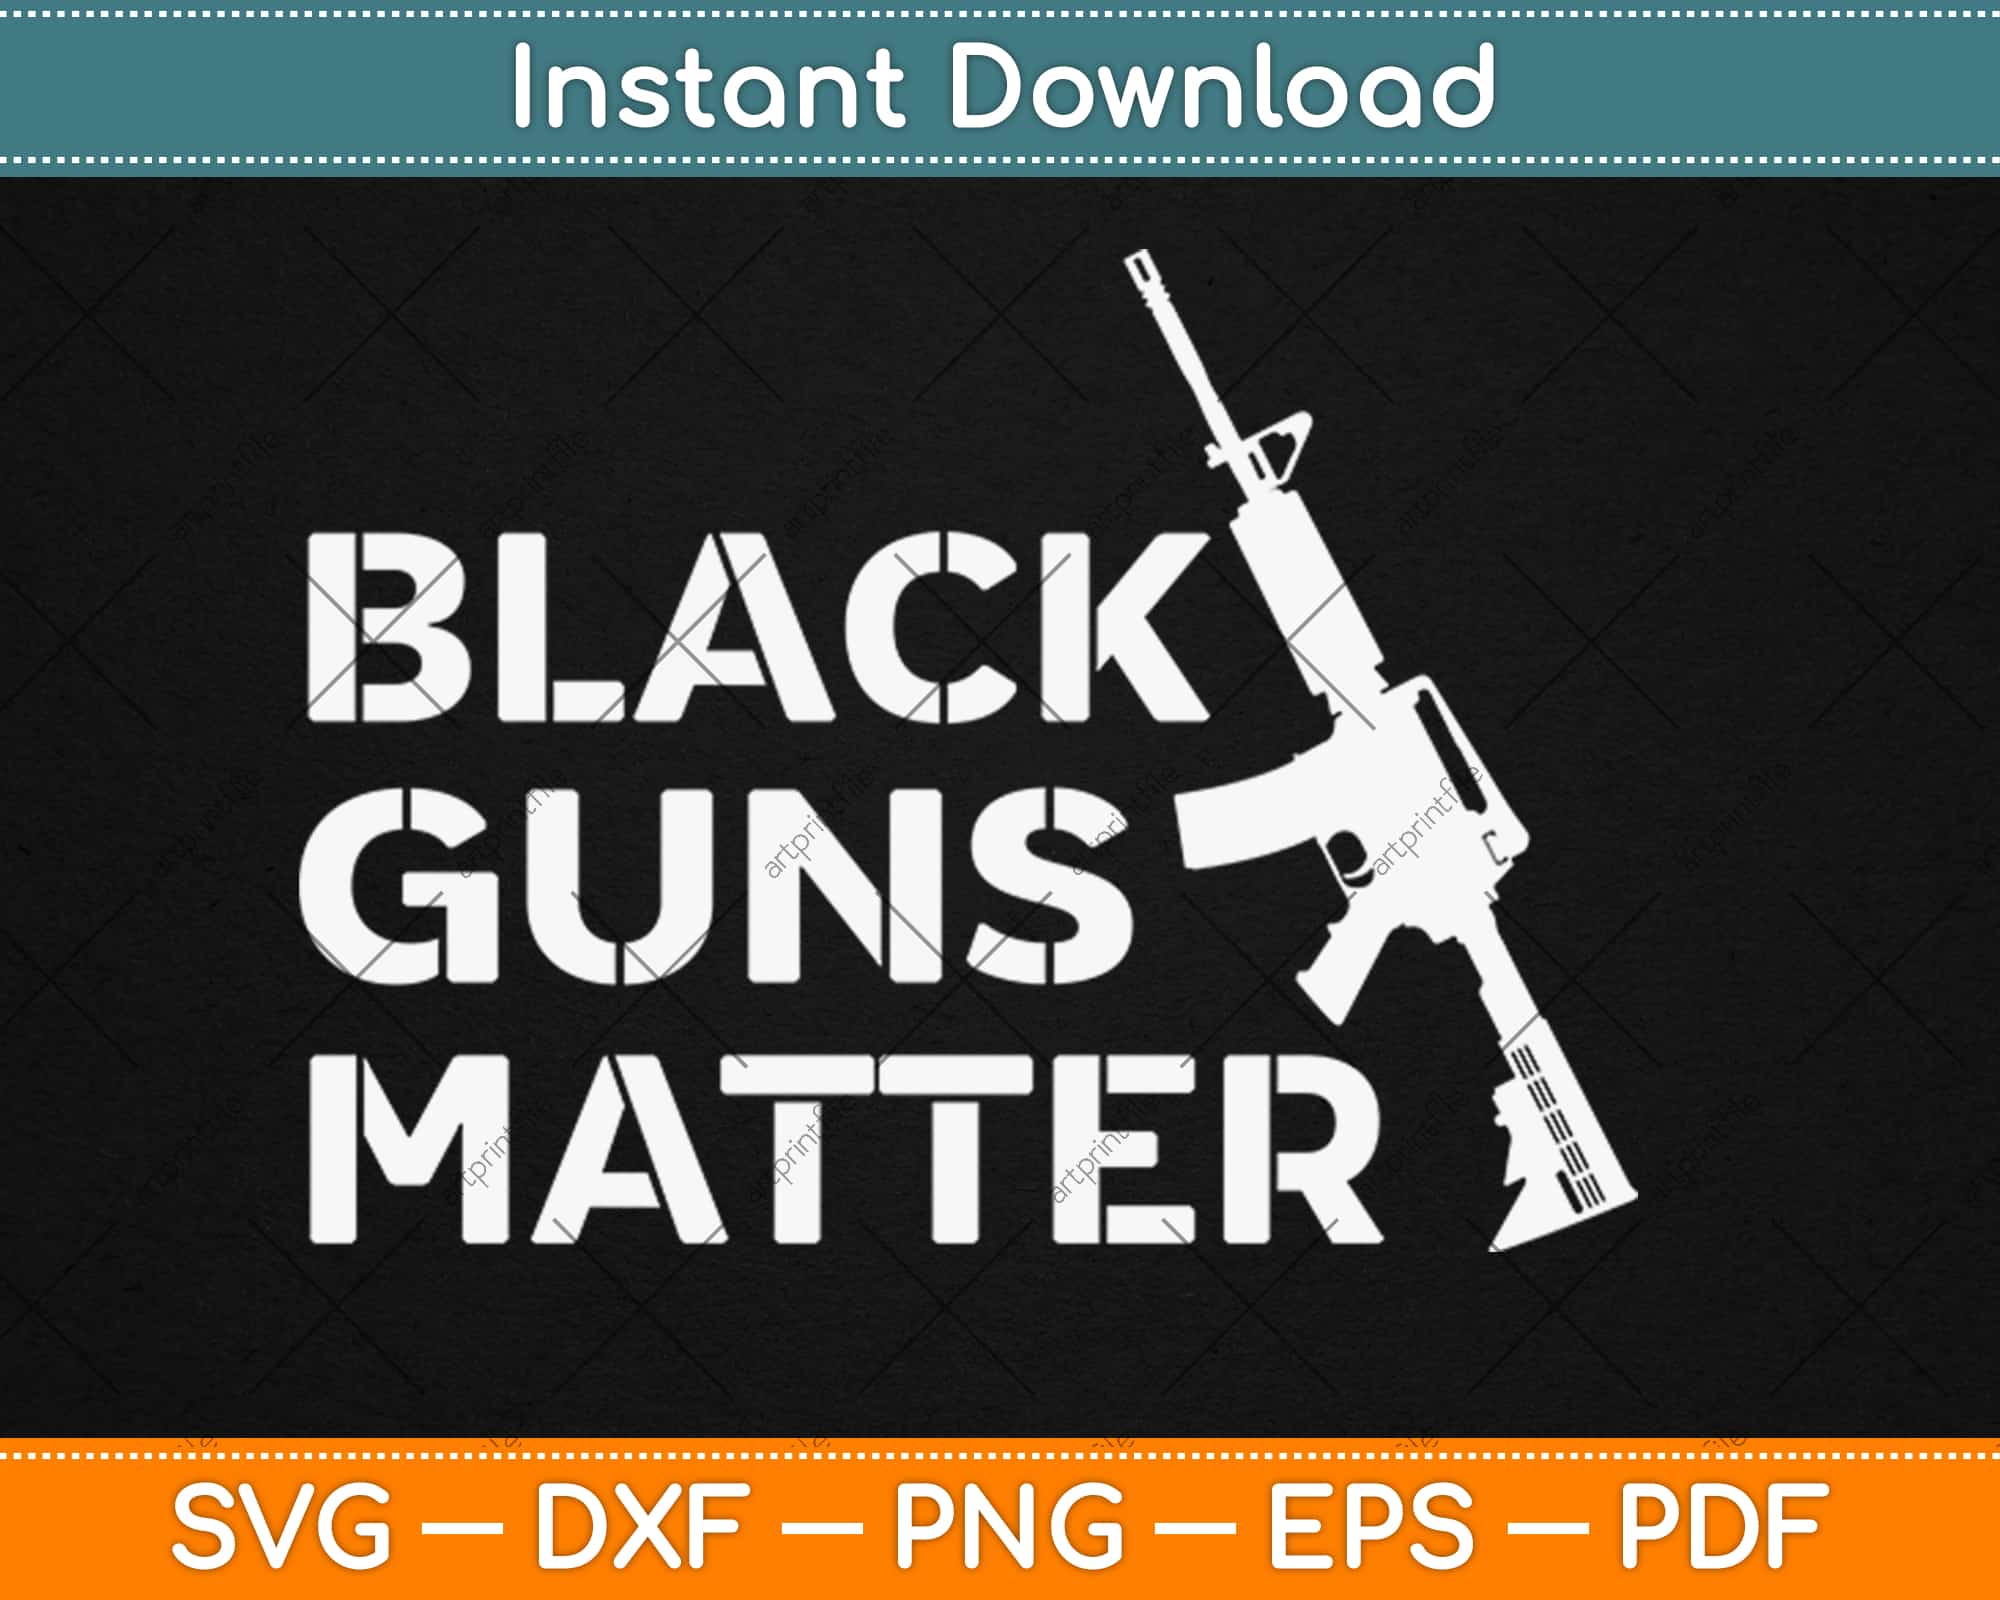 Download Black Guns Matter Svg Png Dxf Eps Craft Cut File Instant Download Artprintfile